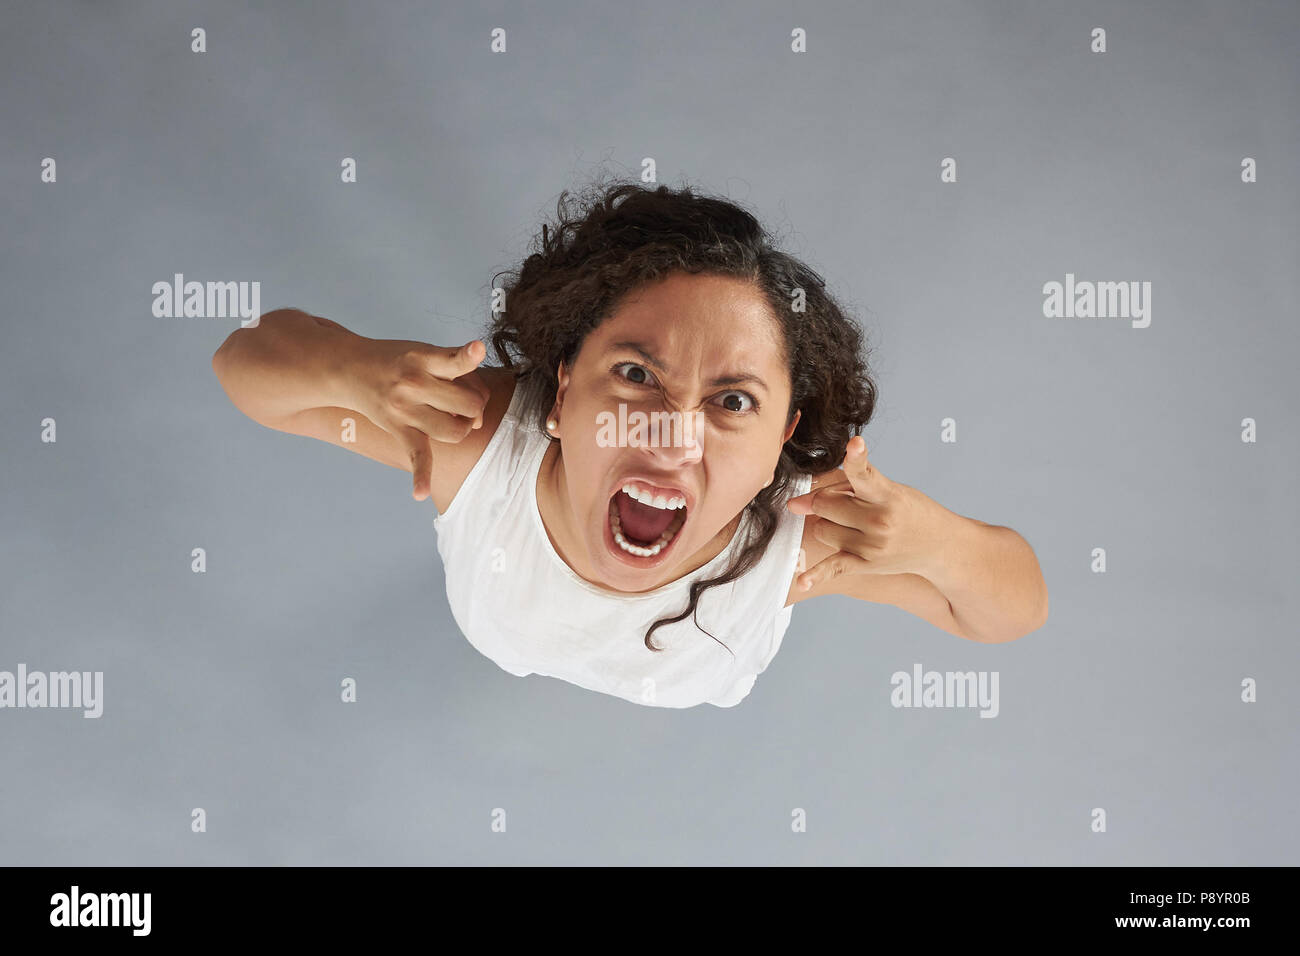 Verrückte junge Frau mit verärgerten Ausdruck auf grauem Hintergrund über der oberen Ansicht isoliert Stockfoto